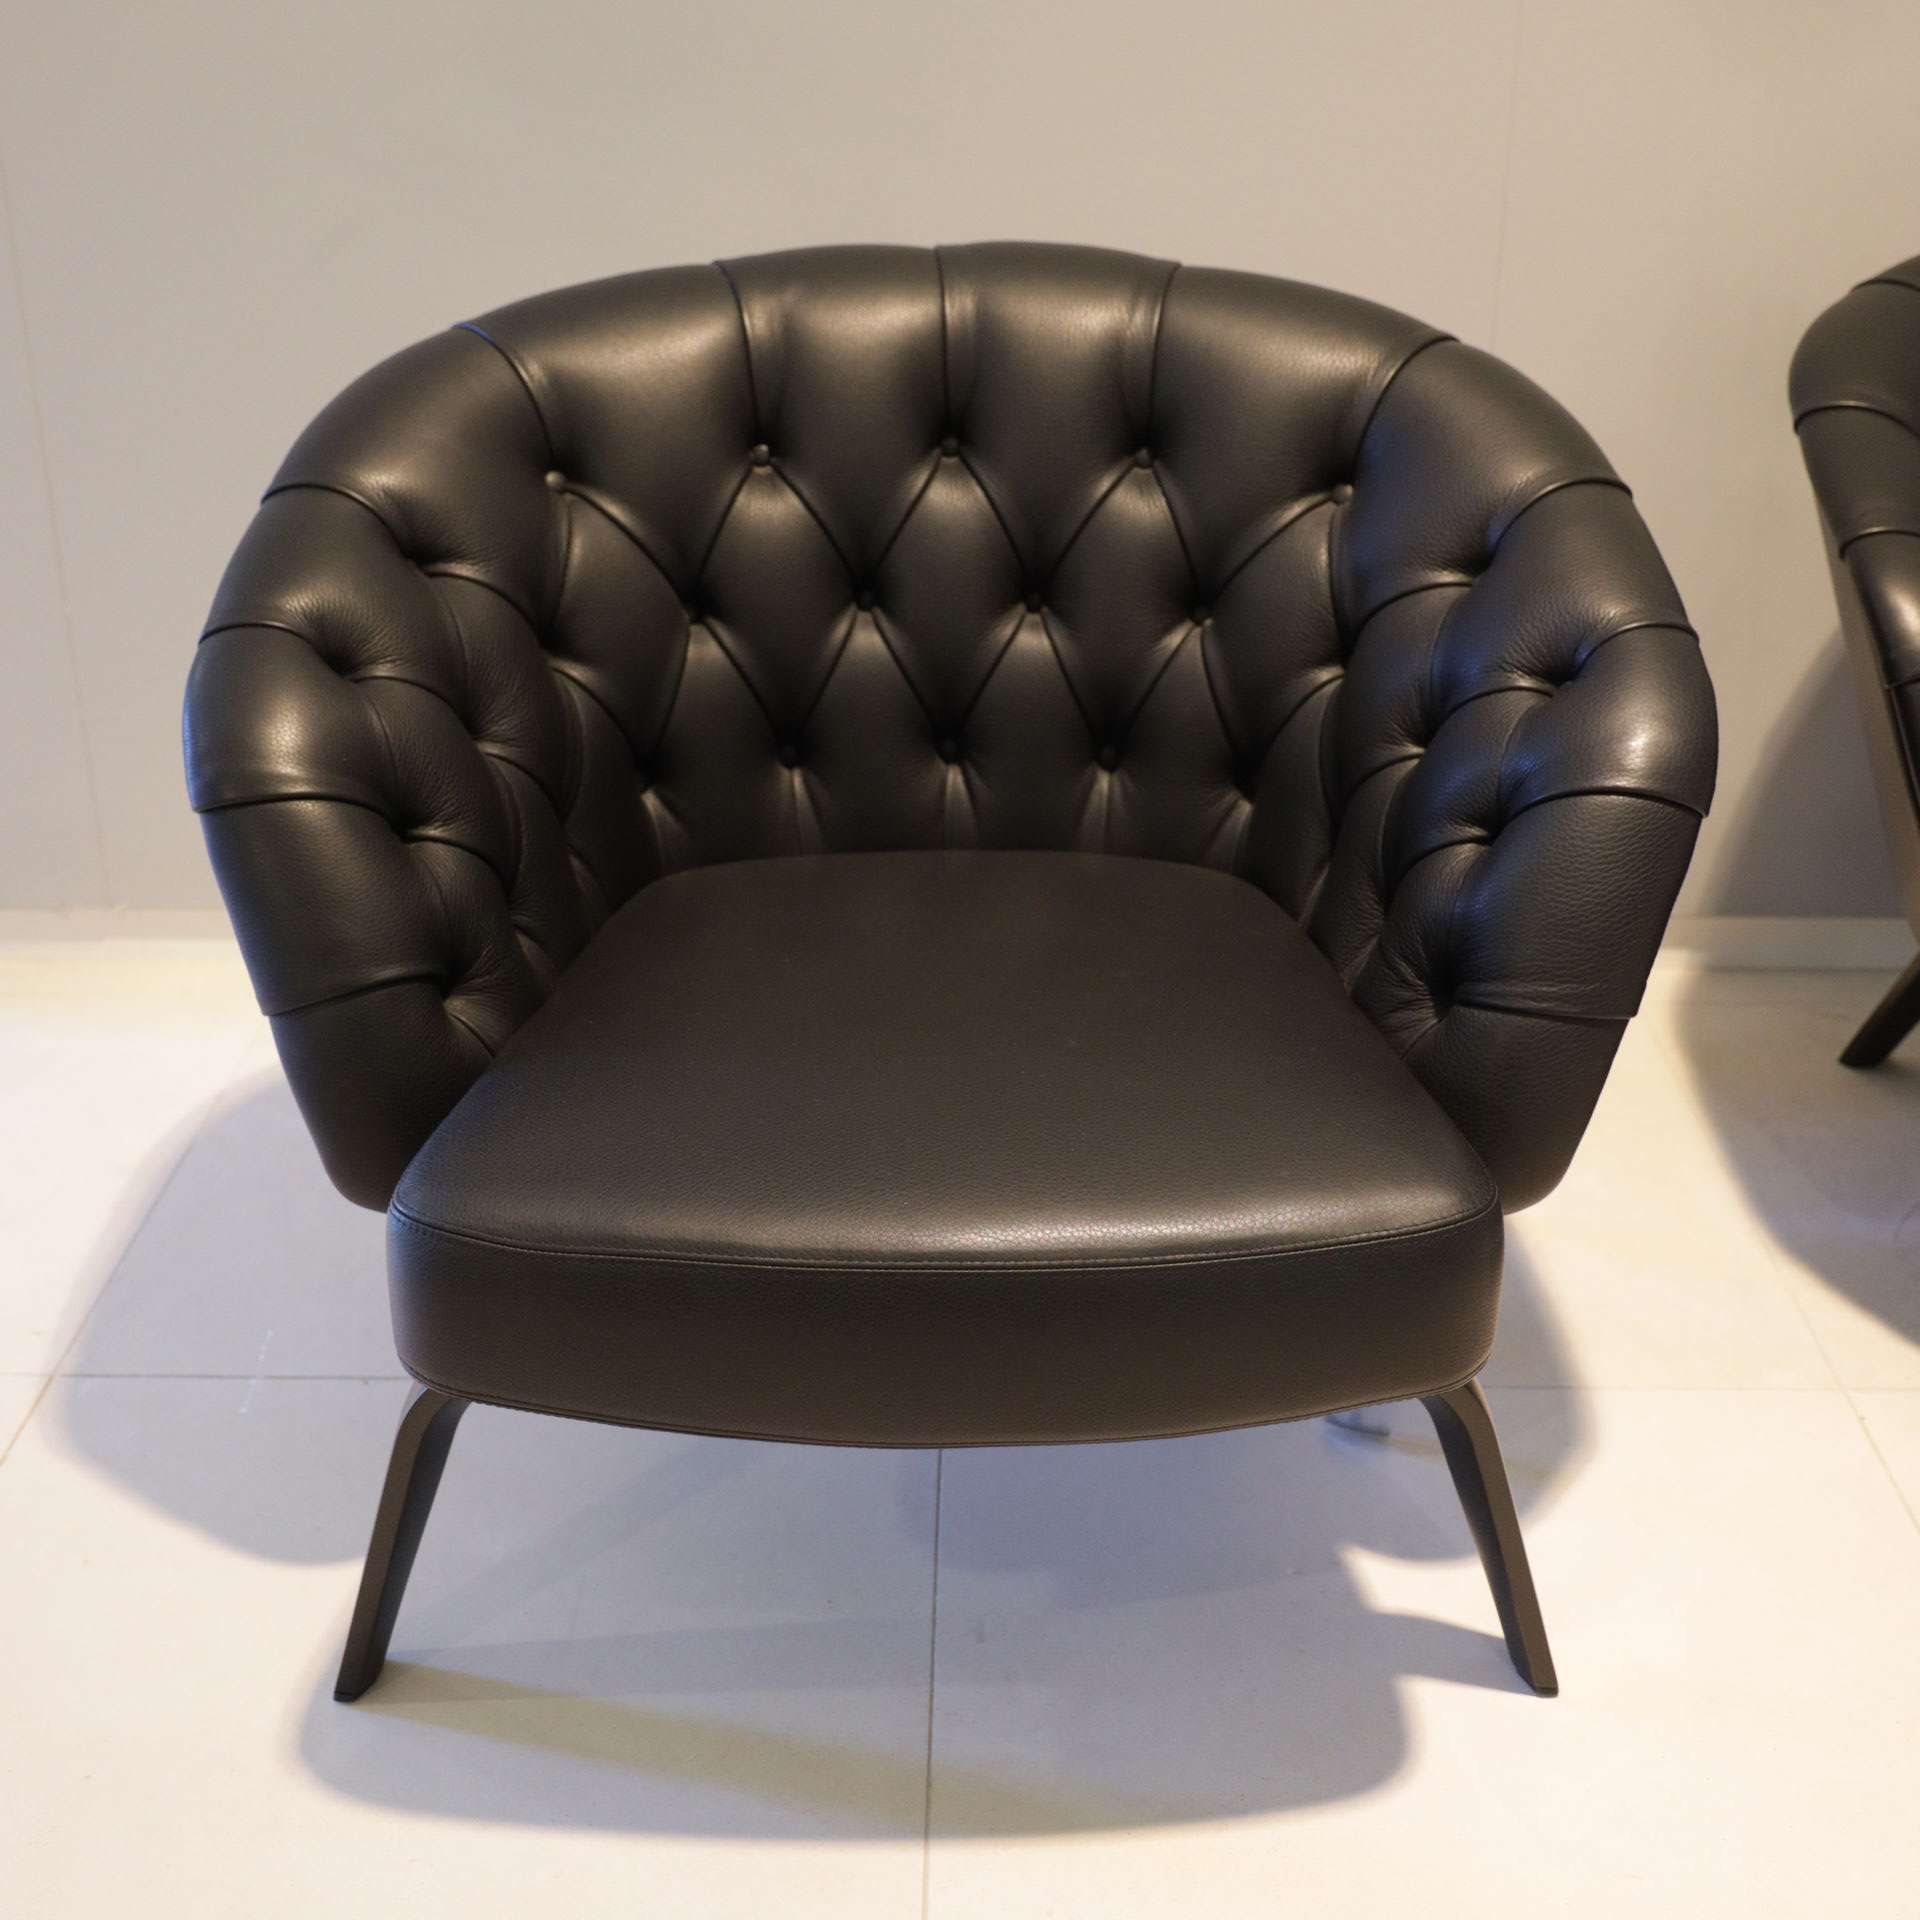 Levering Oplossen haspel Italiaans Design fauteuil | Showroommodellen.nl